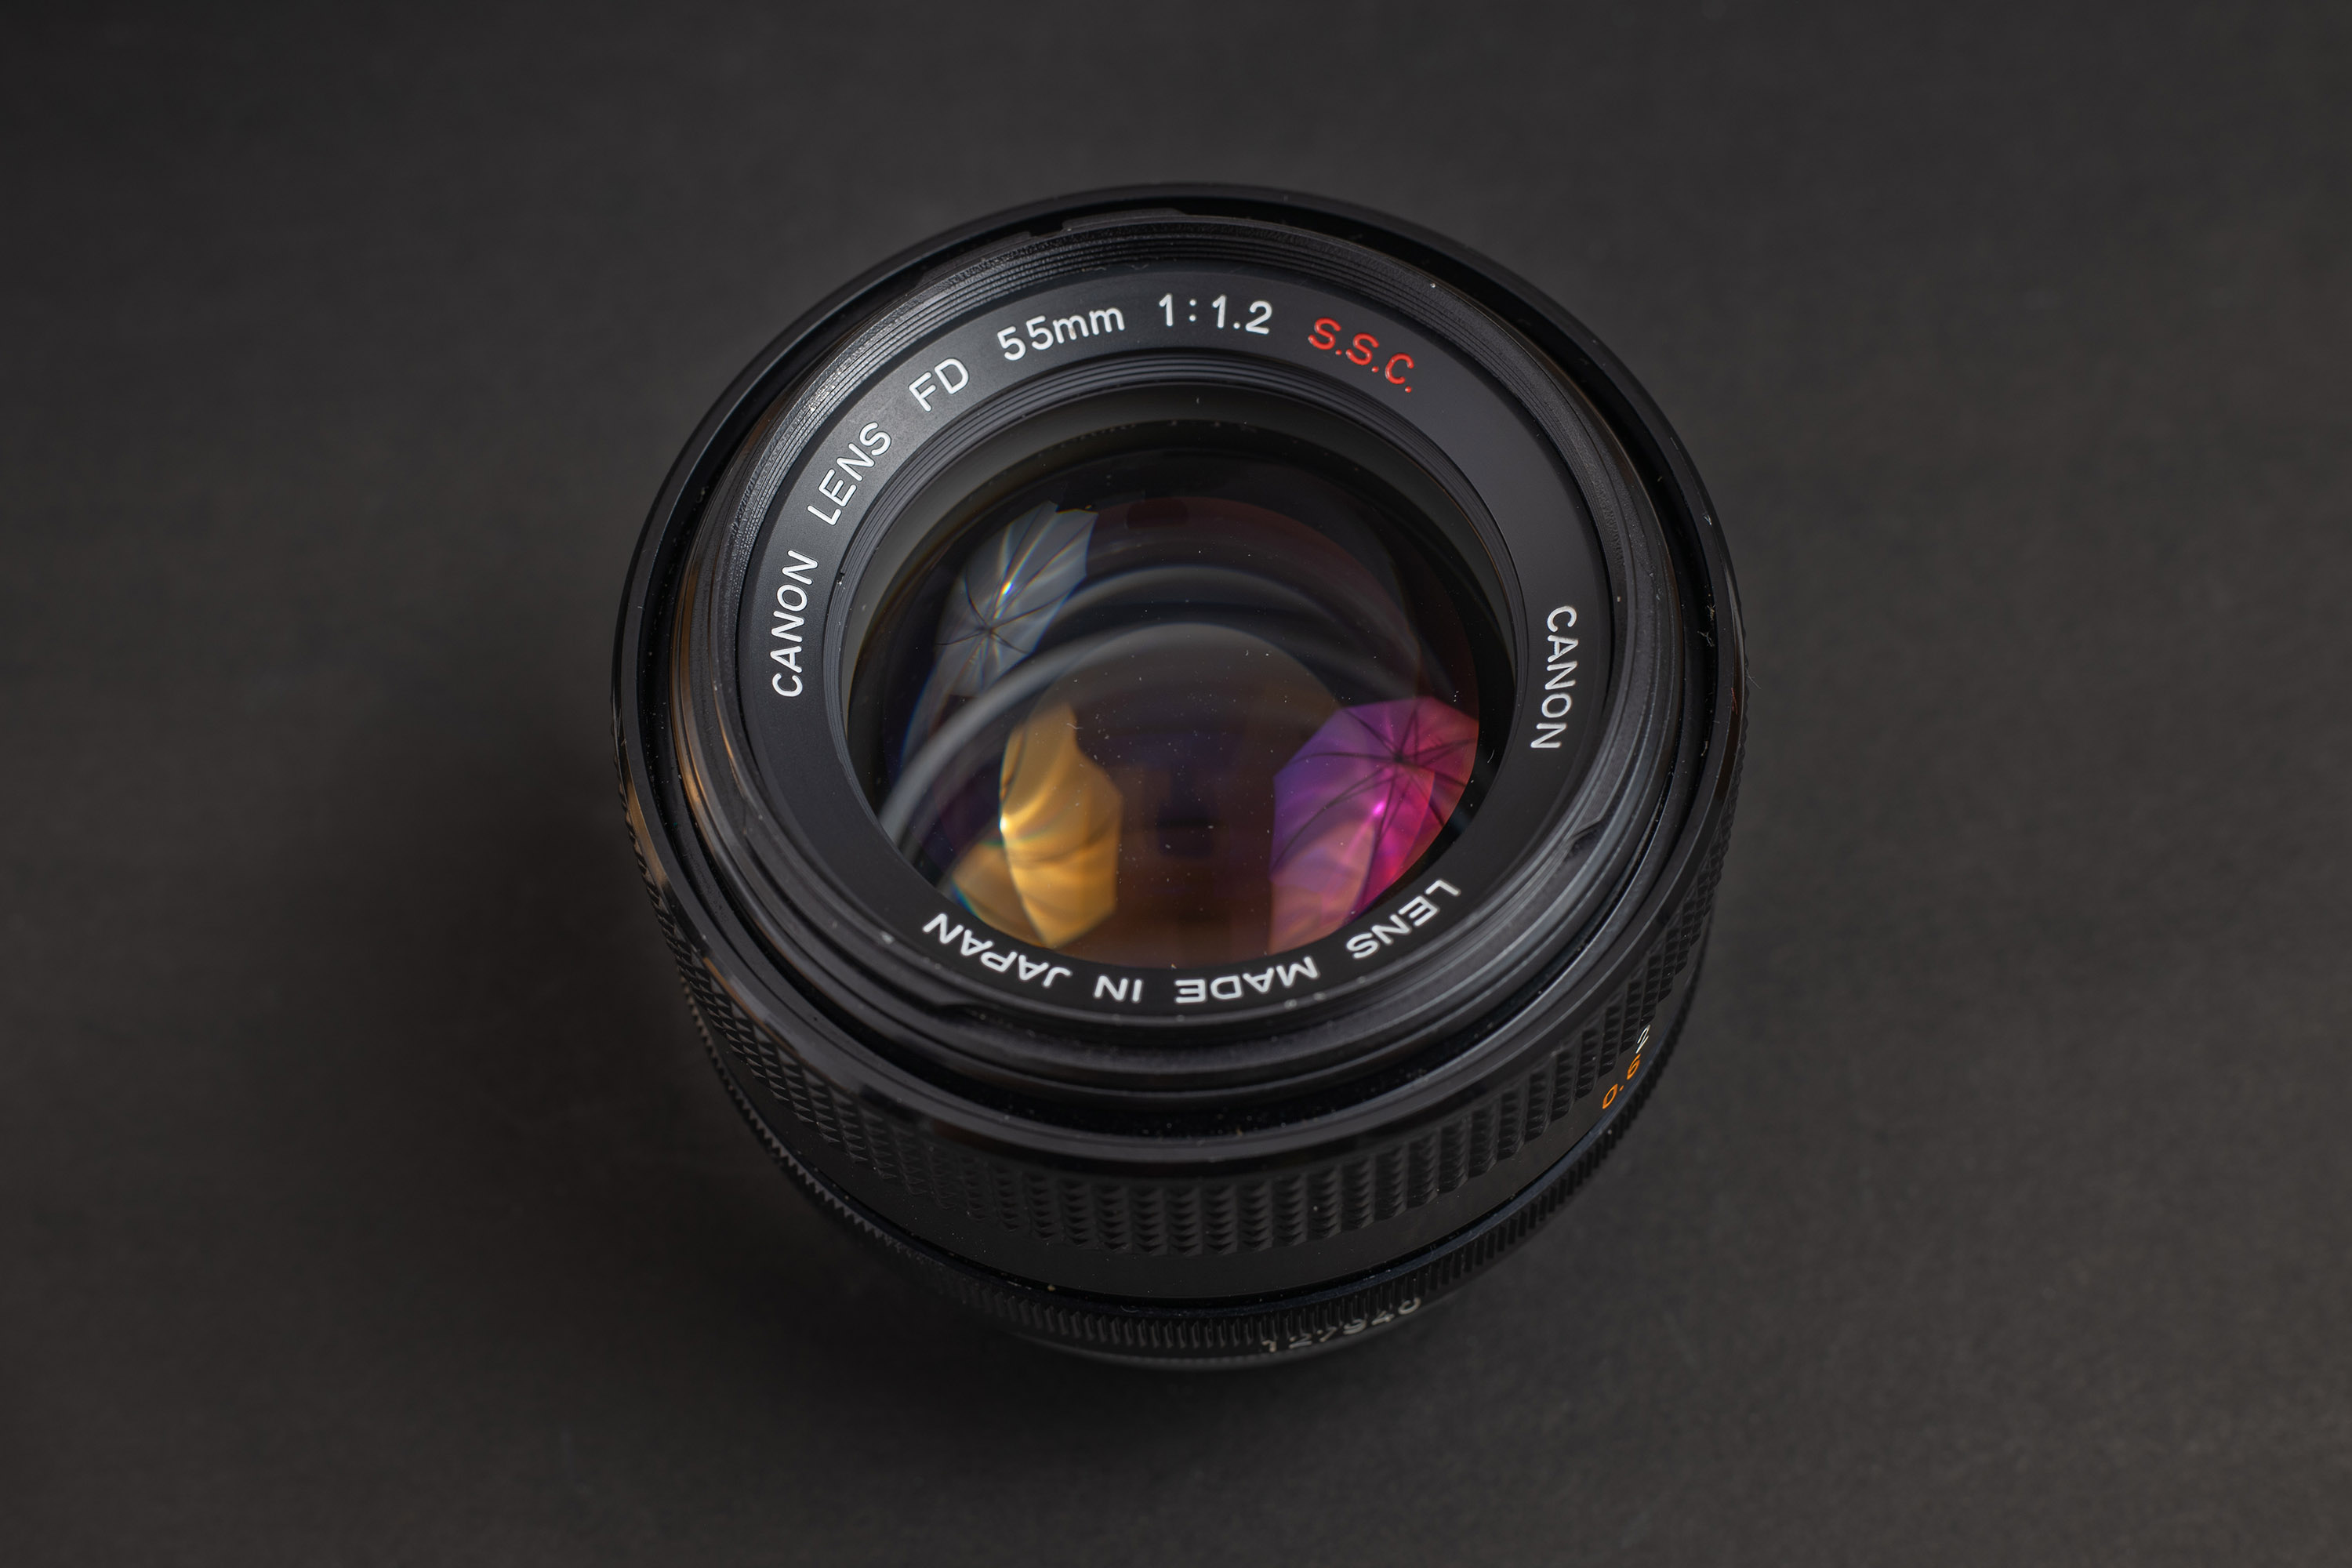 Canon FD 55mm f1.2 S.S.C. Lens Review - Lens Legend